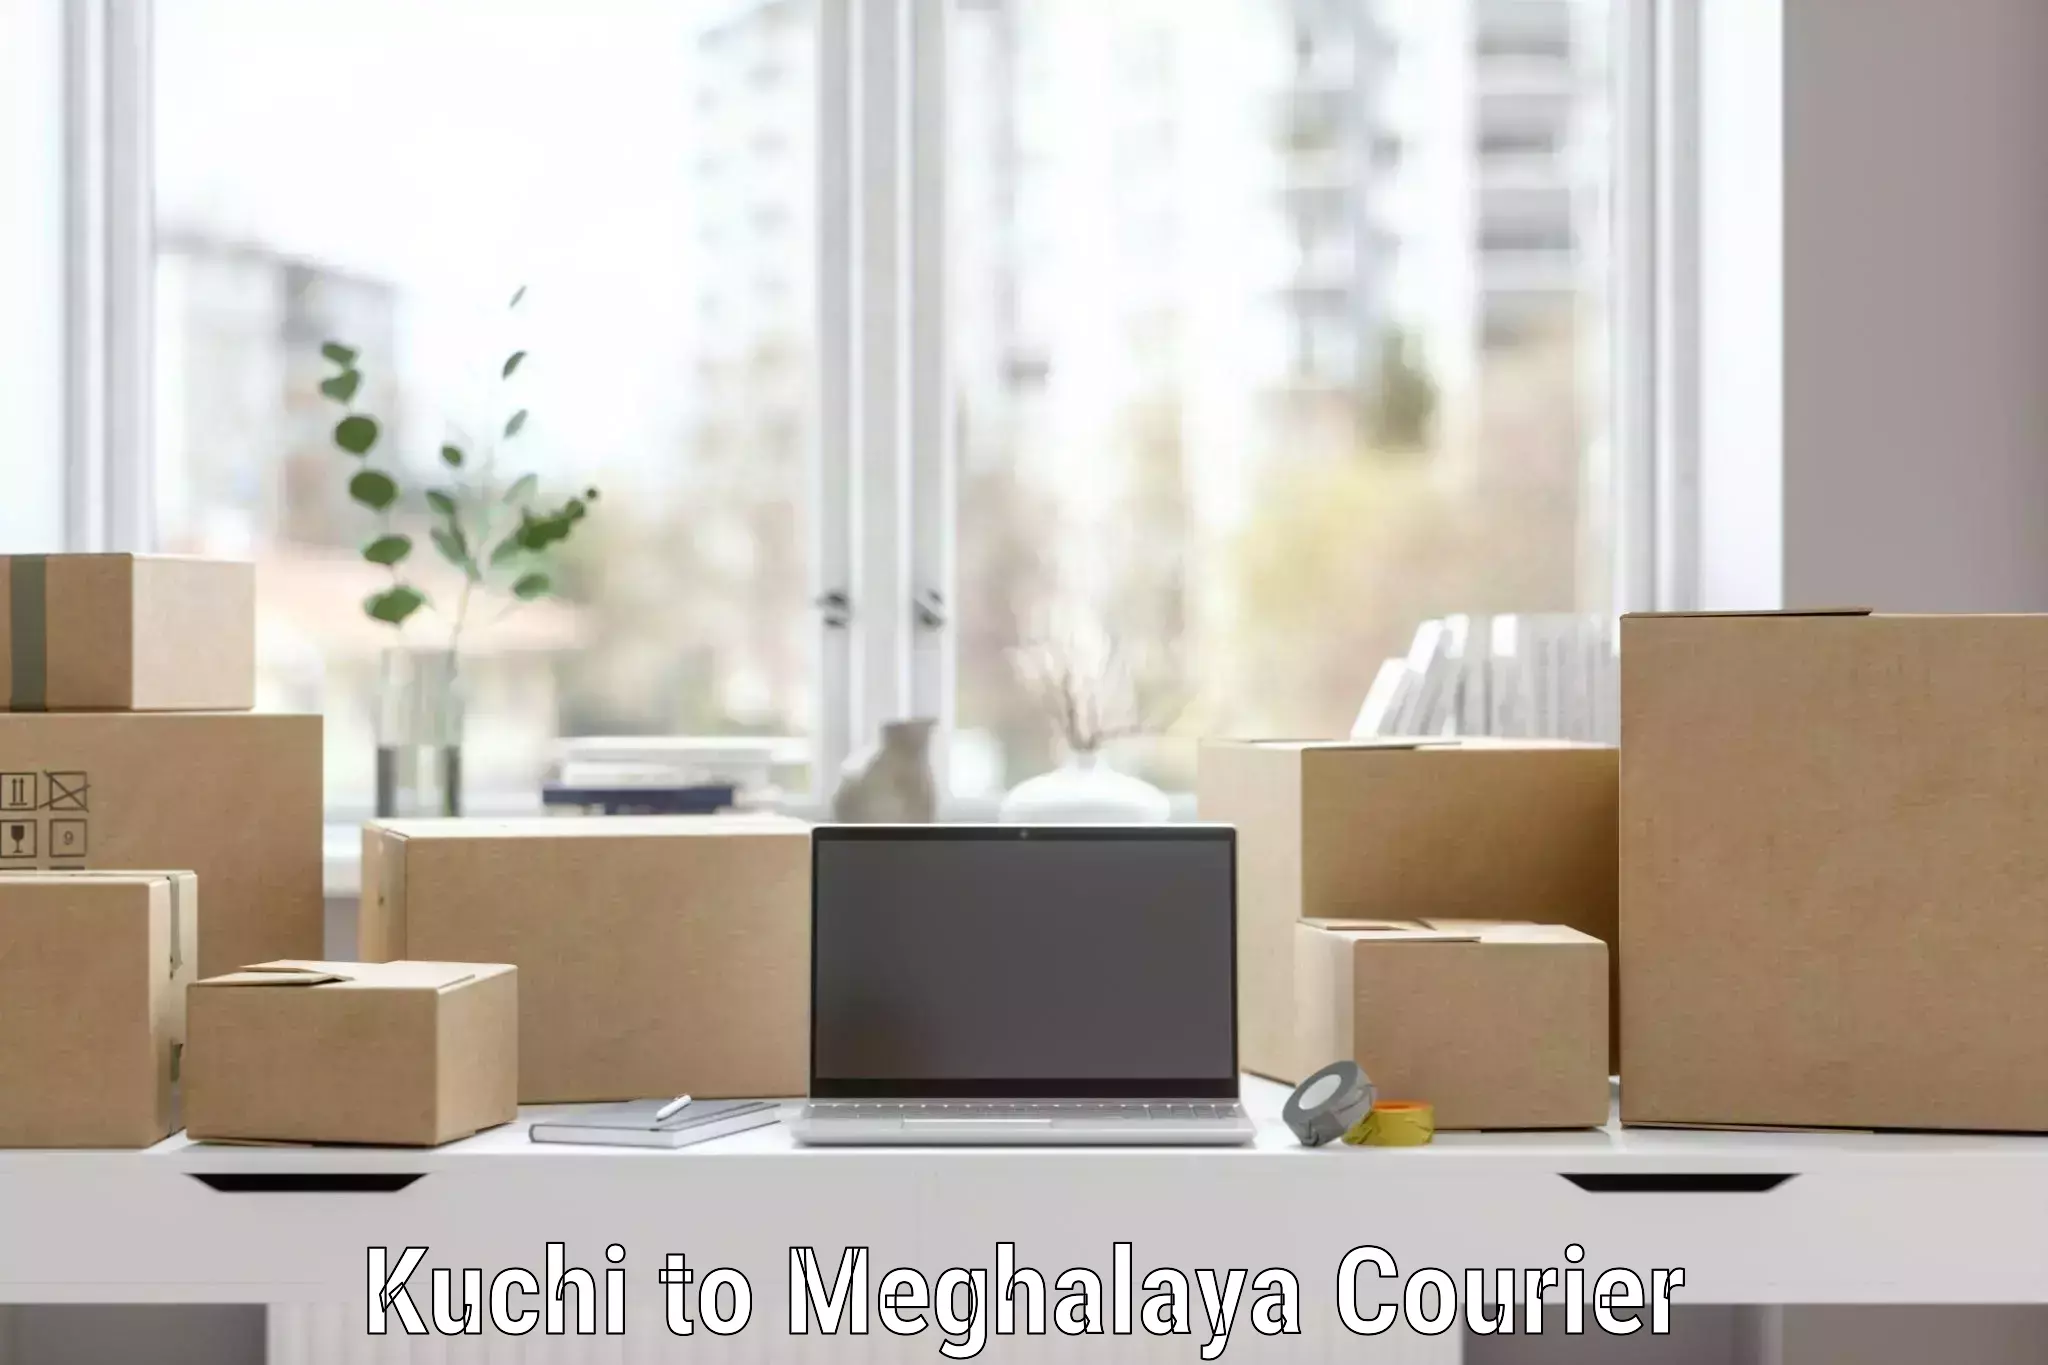 Specialized moving company Kuchi to Tura